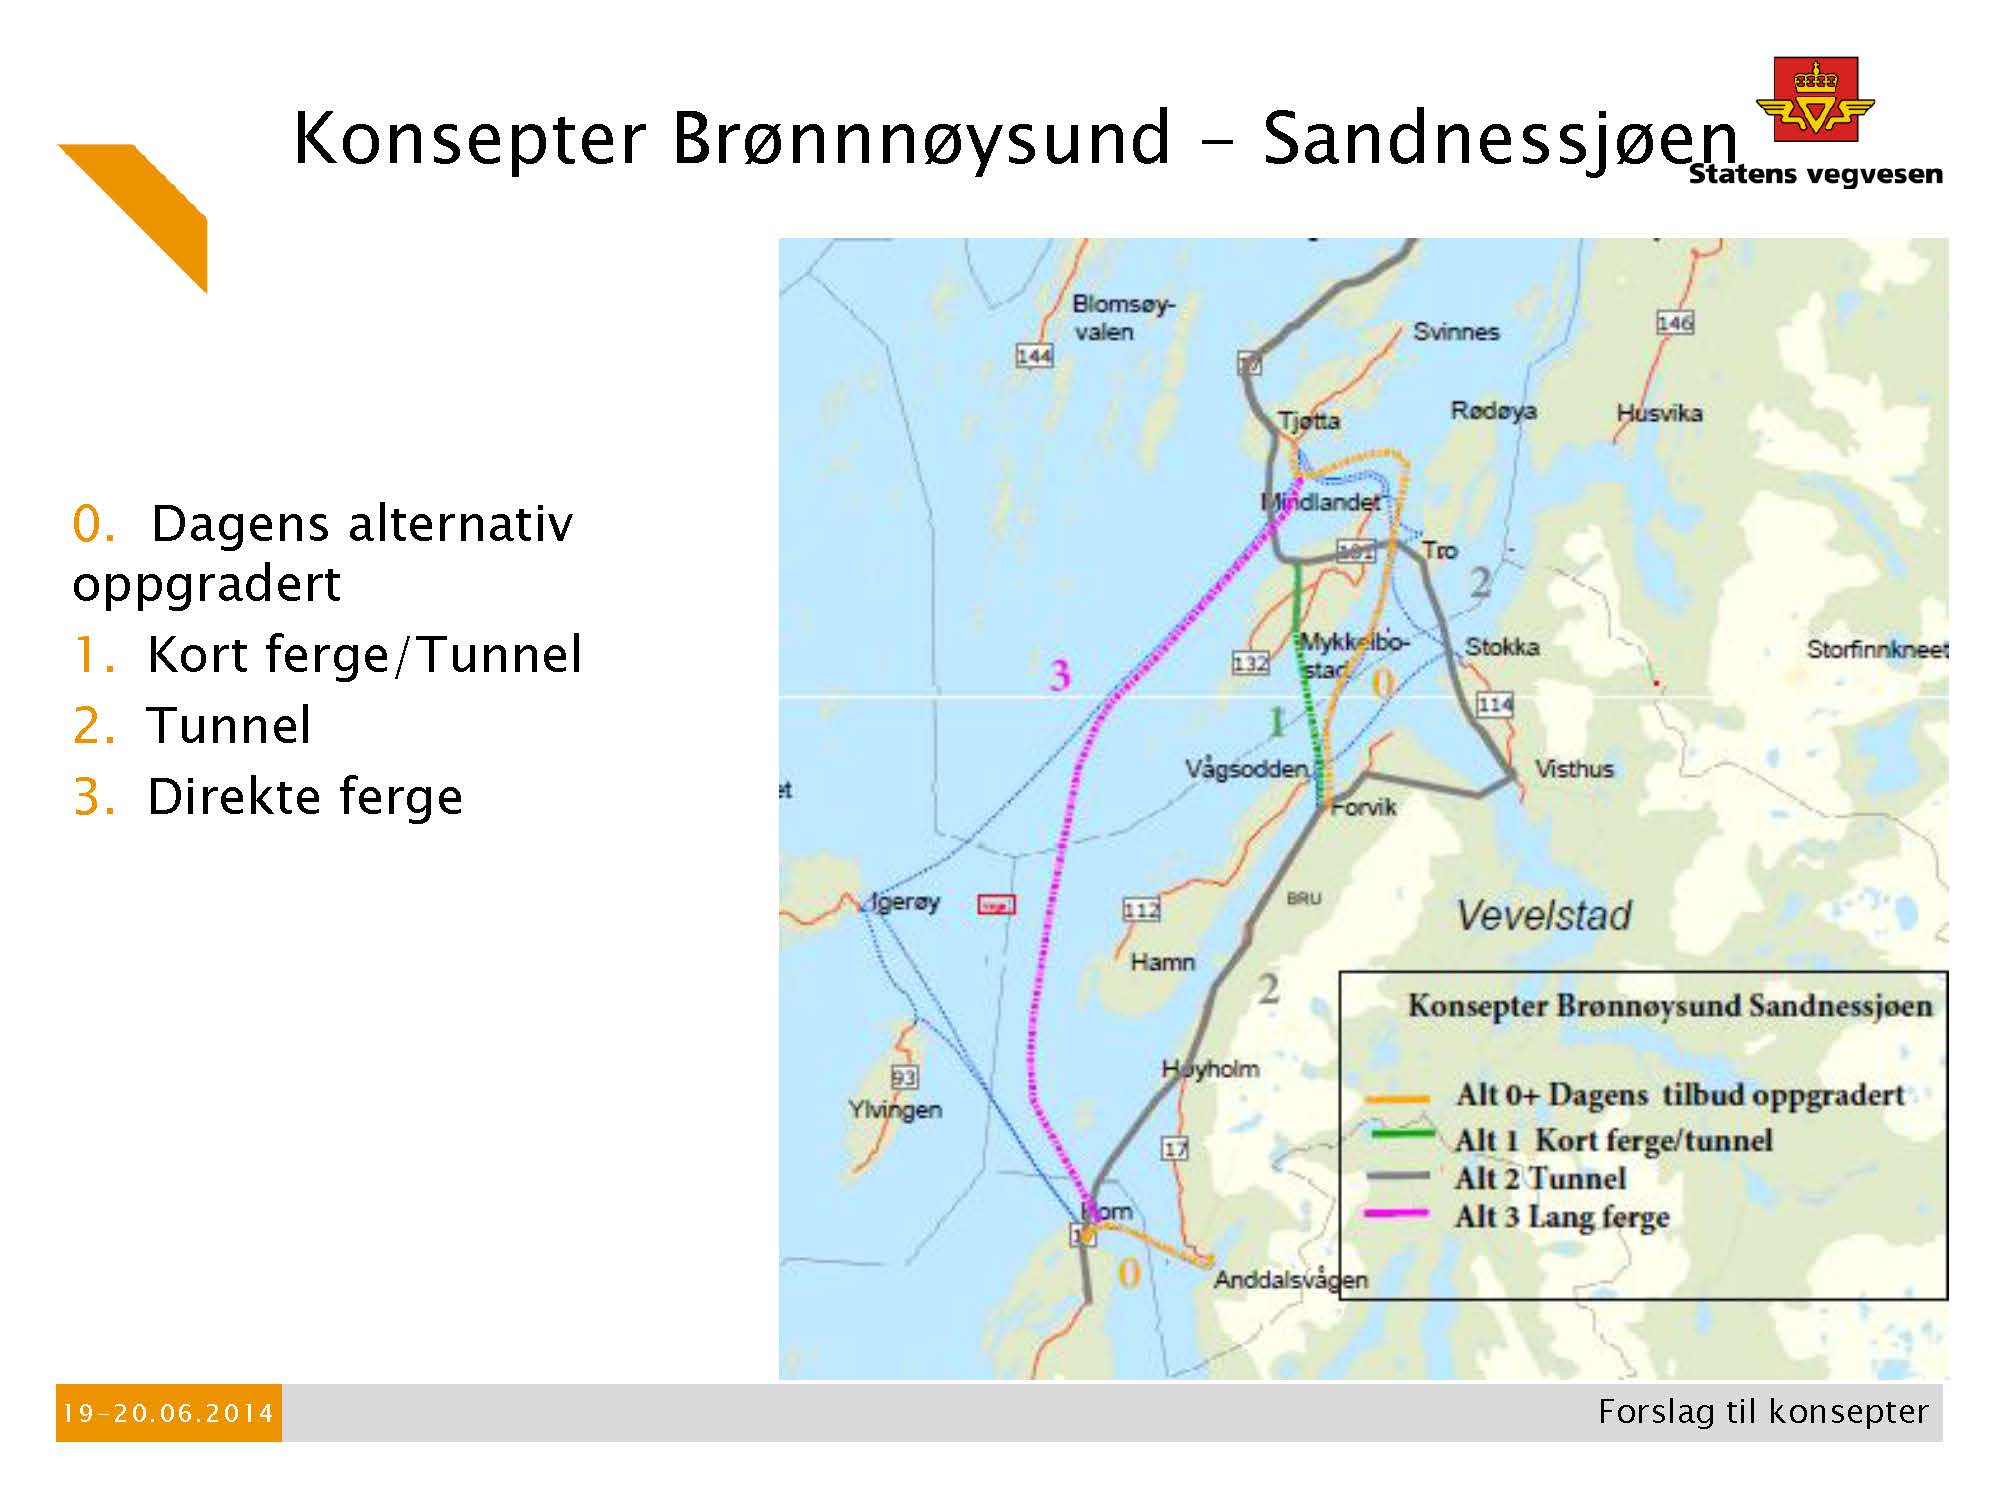 Konsepter Brønnøysund-Sandnessjøen.